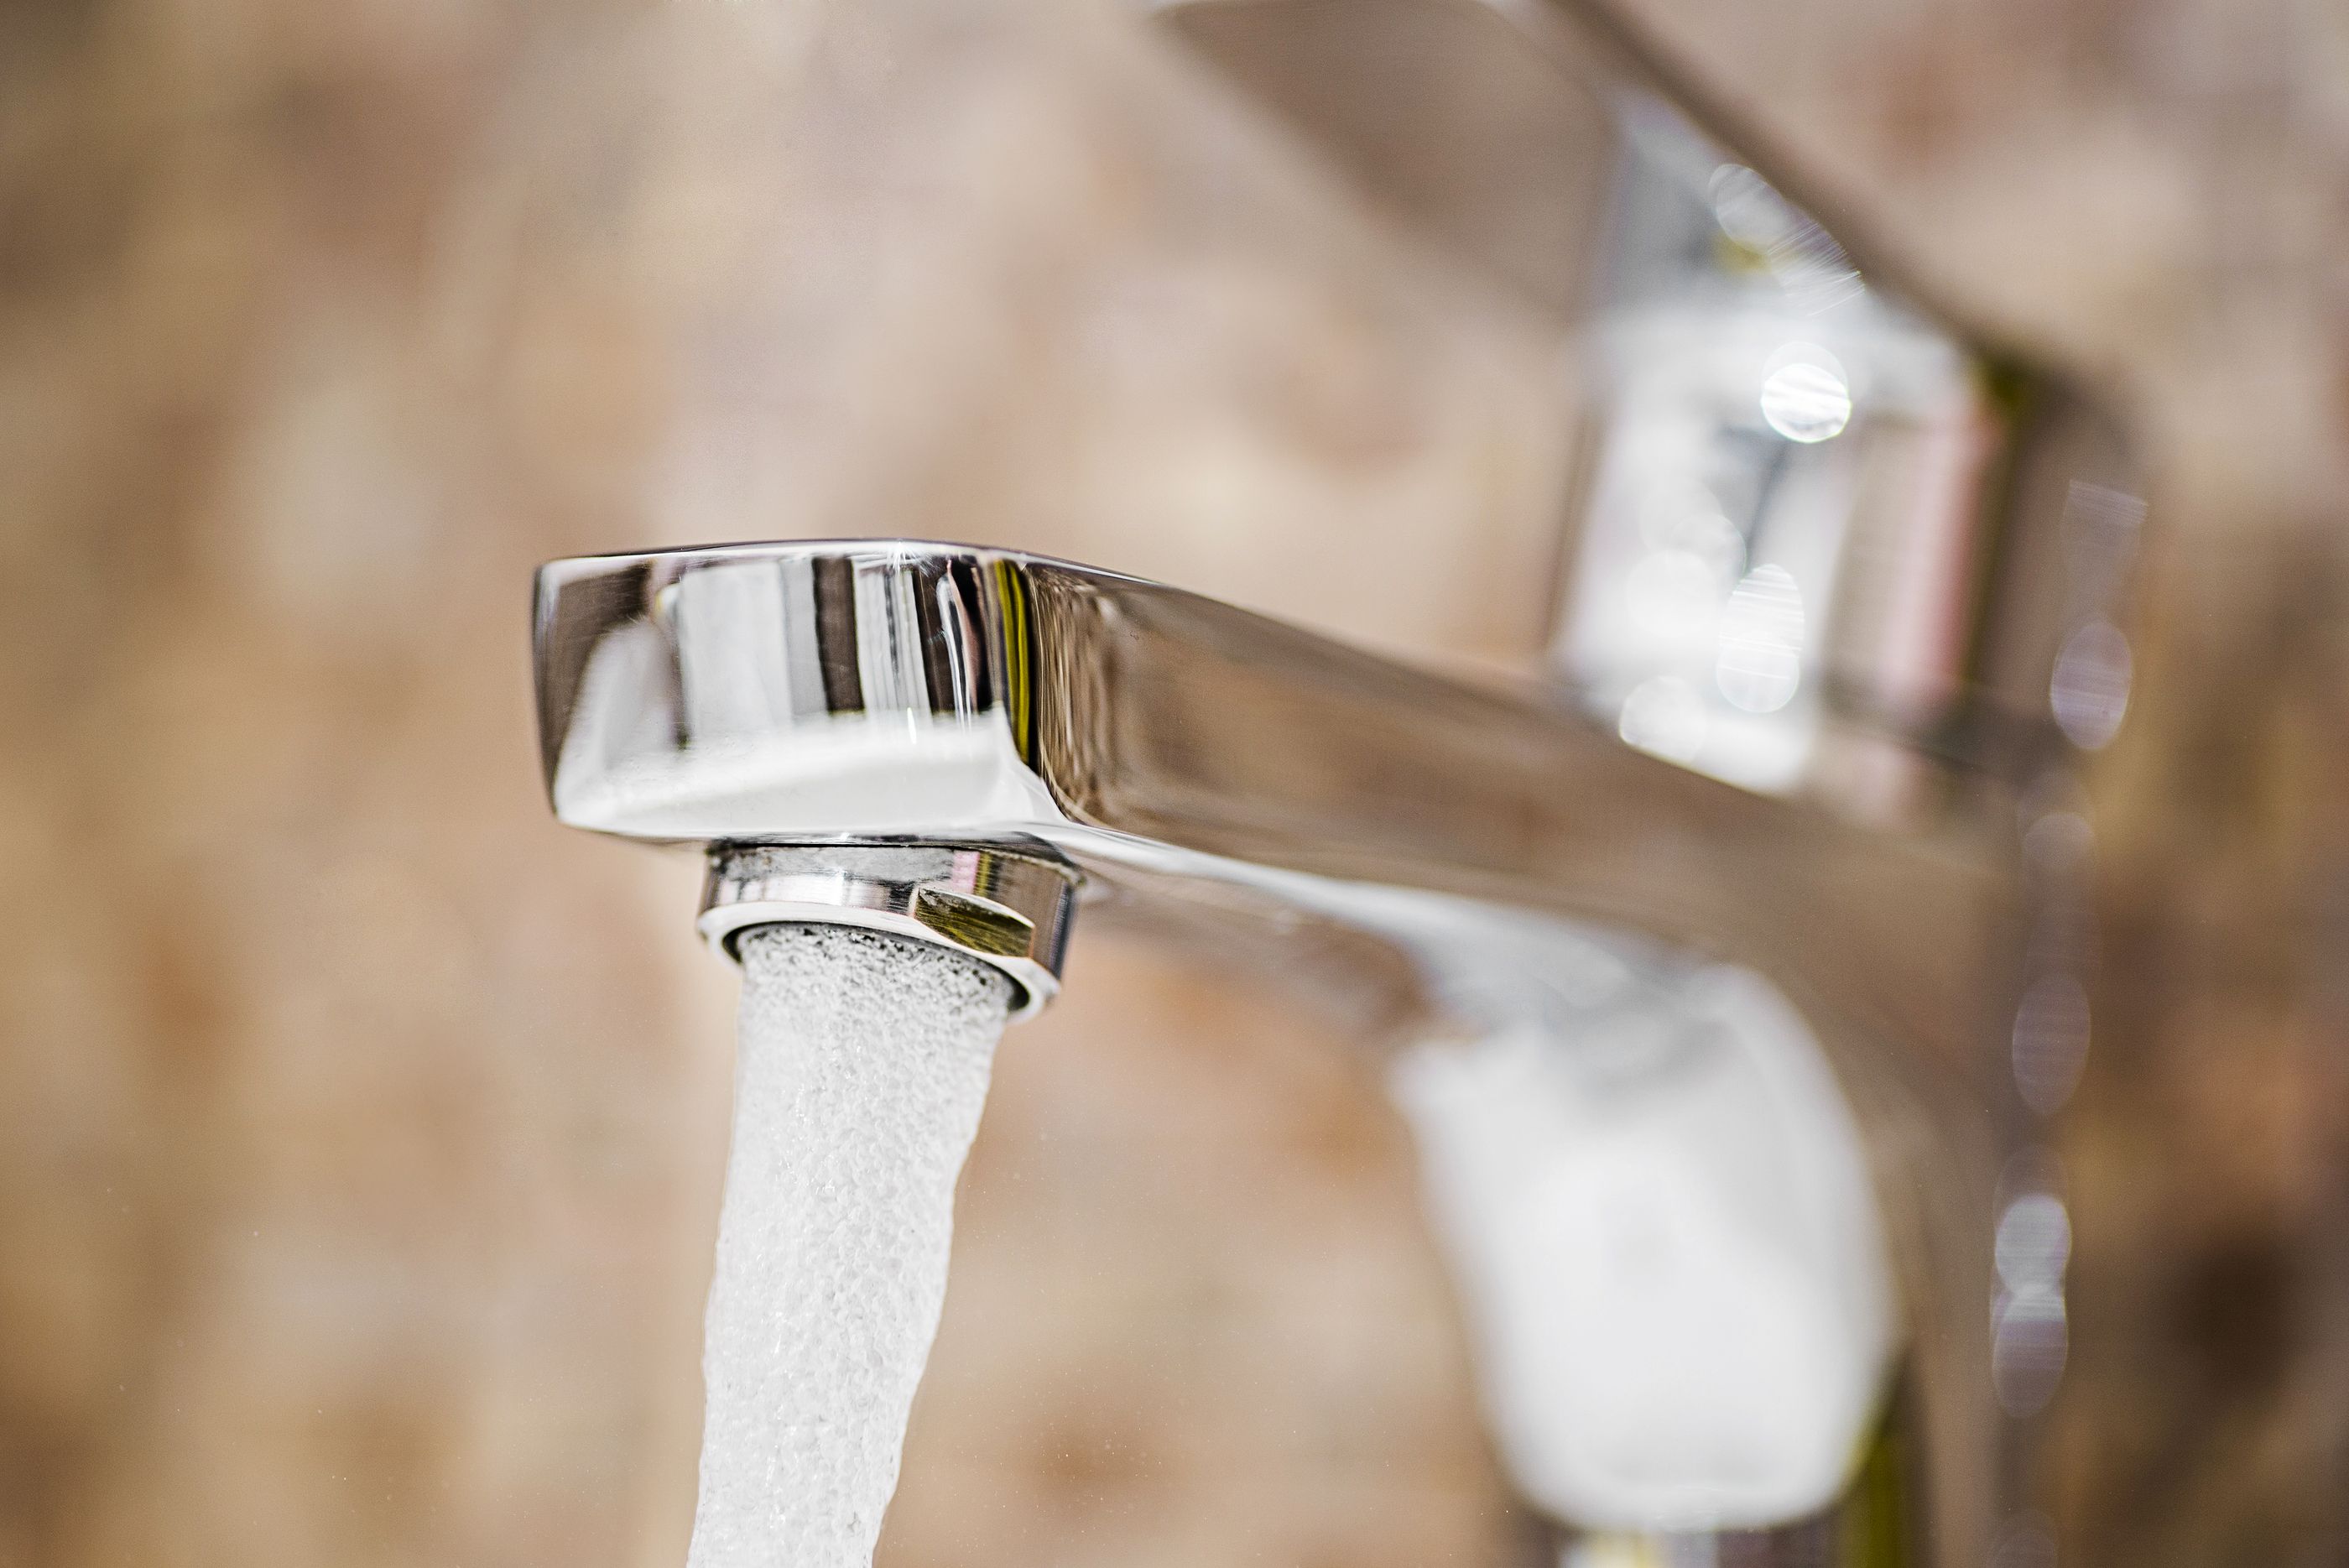 La factura del suministro de agua varía hasta un 479% según un estudio de FACUA en 57 ciudades. Foto: Bigstock